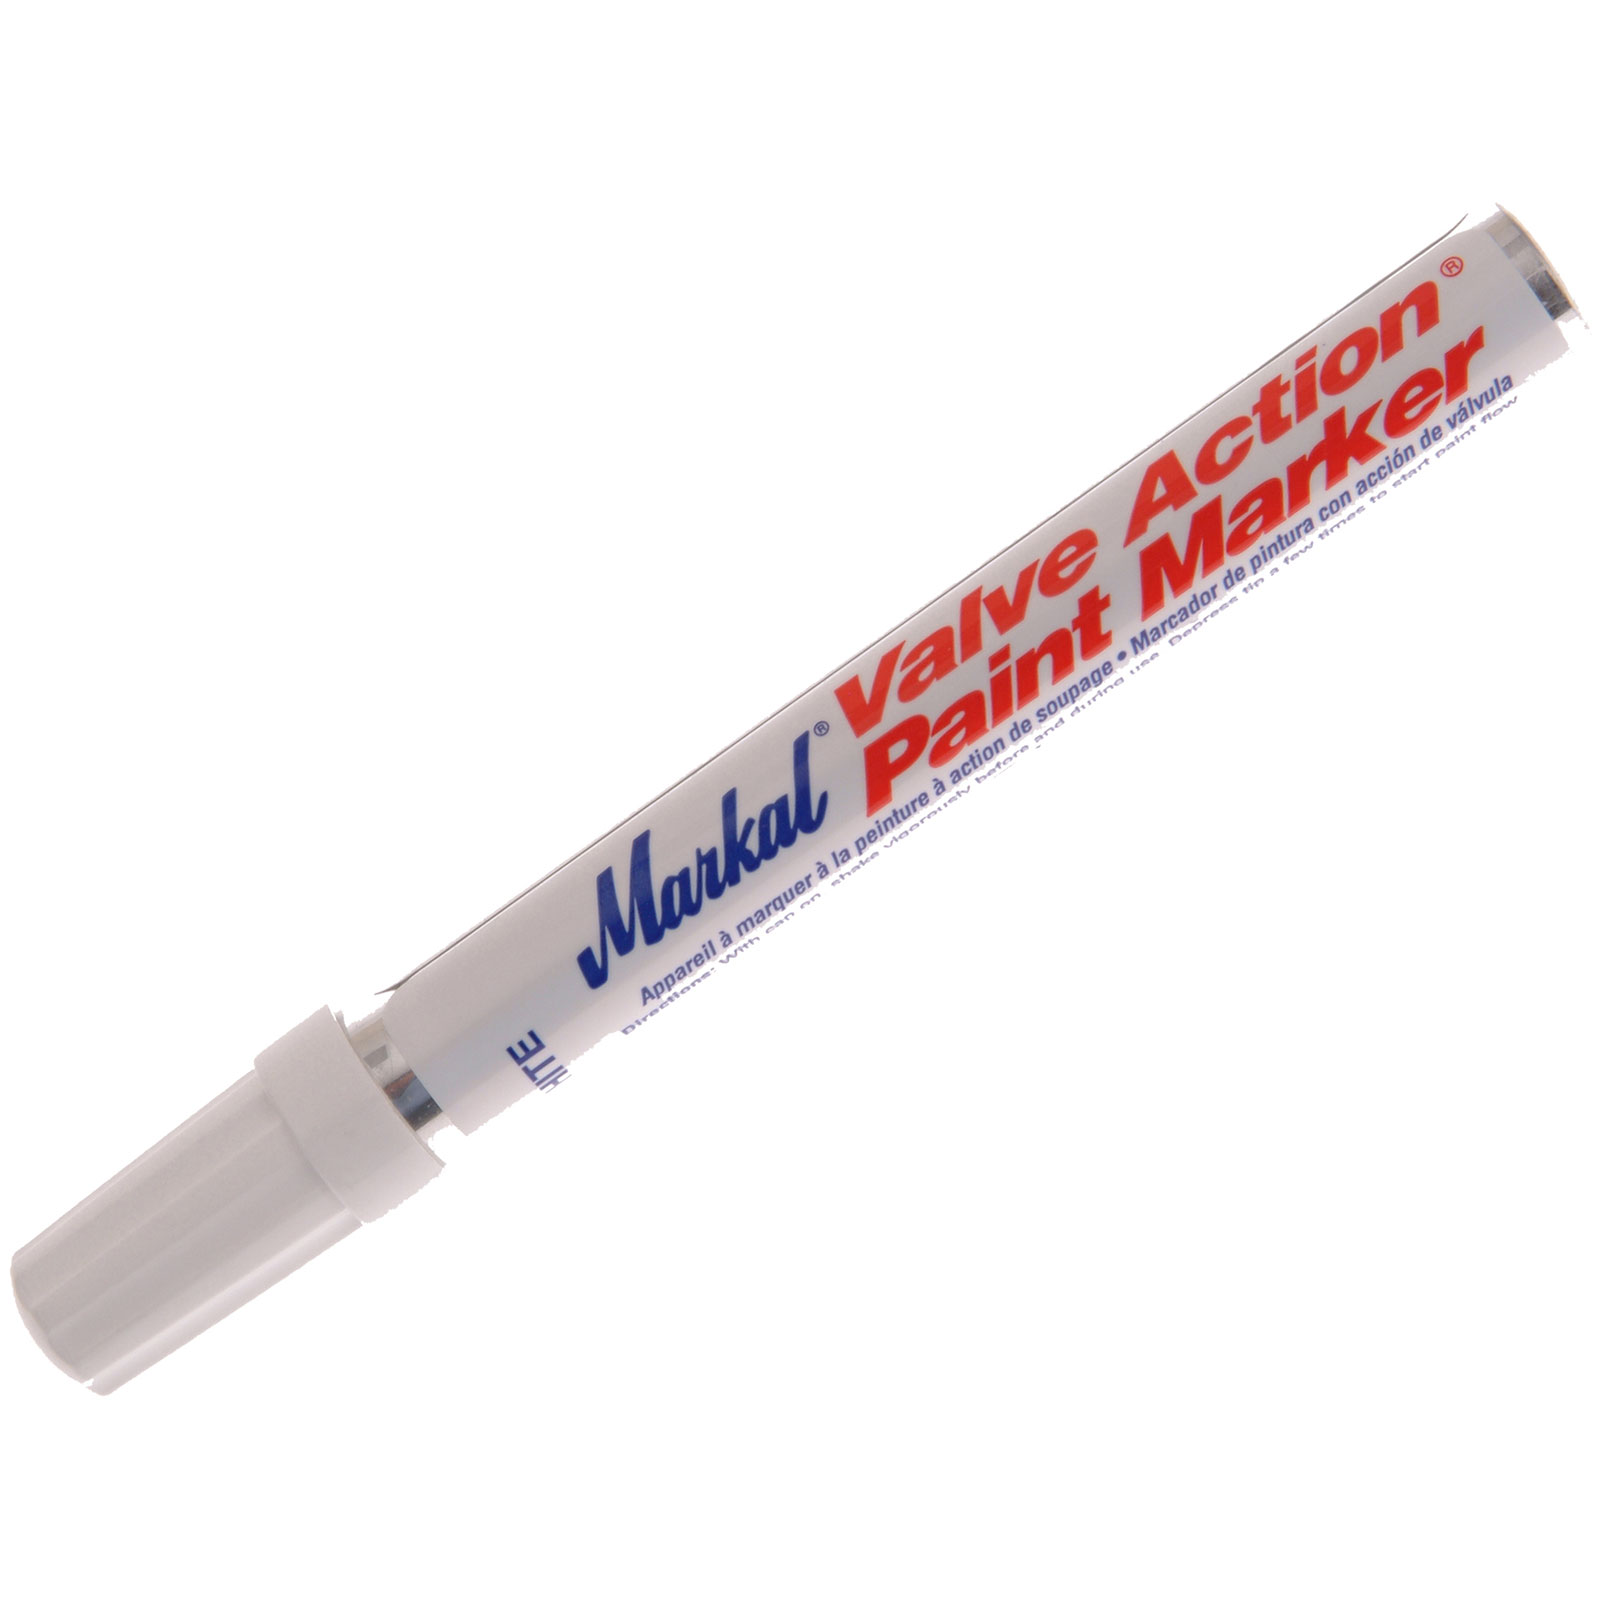 Markal® 96652 Stylmark® Paint Tube Marker, 1/8 in Tip, Metal Ball Tip,  White